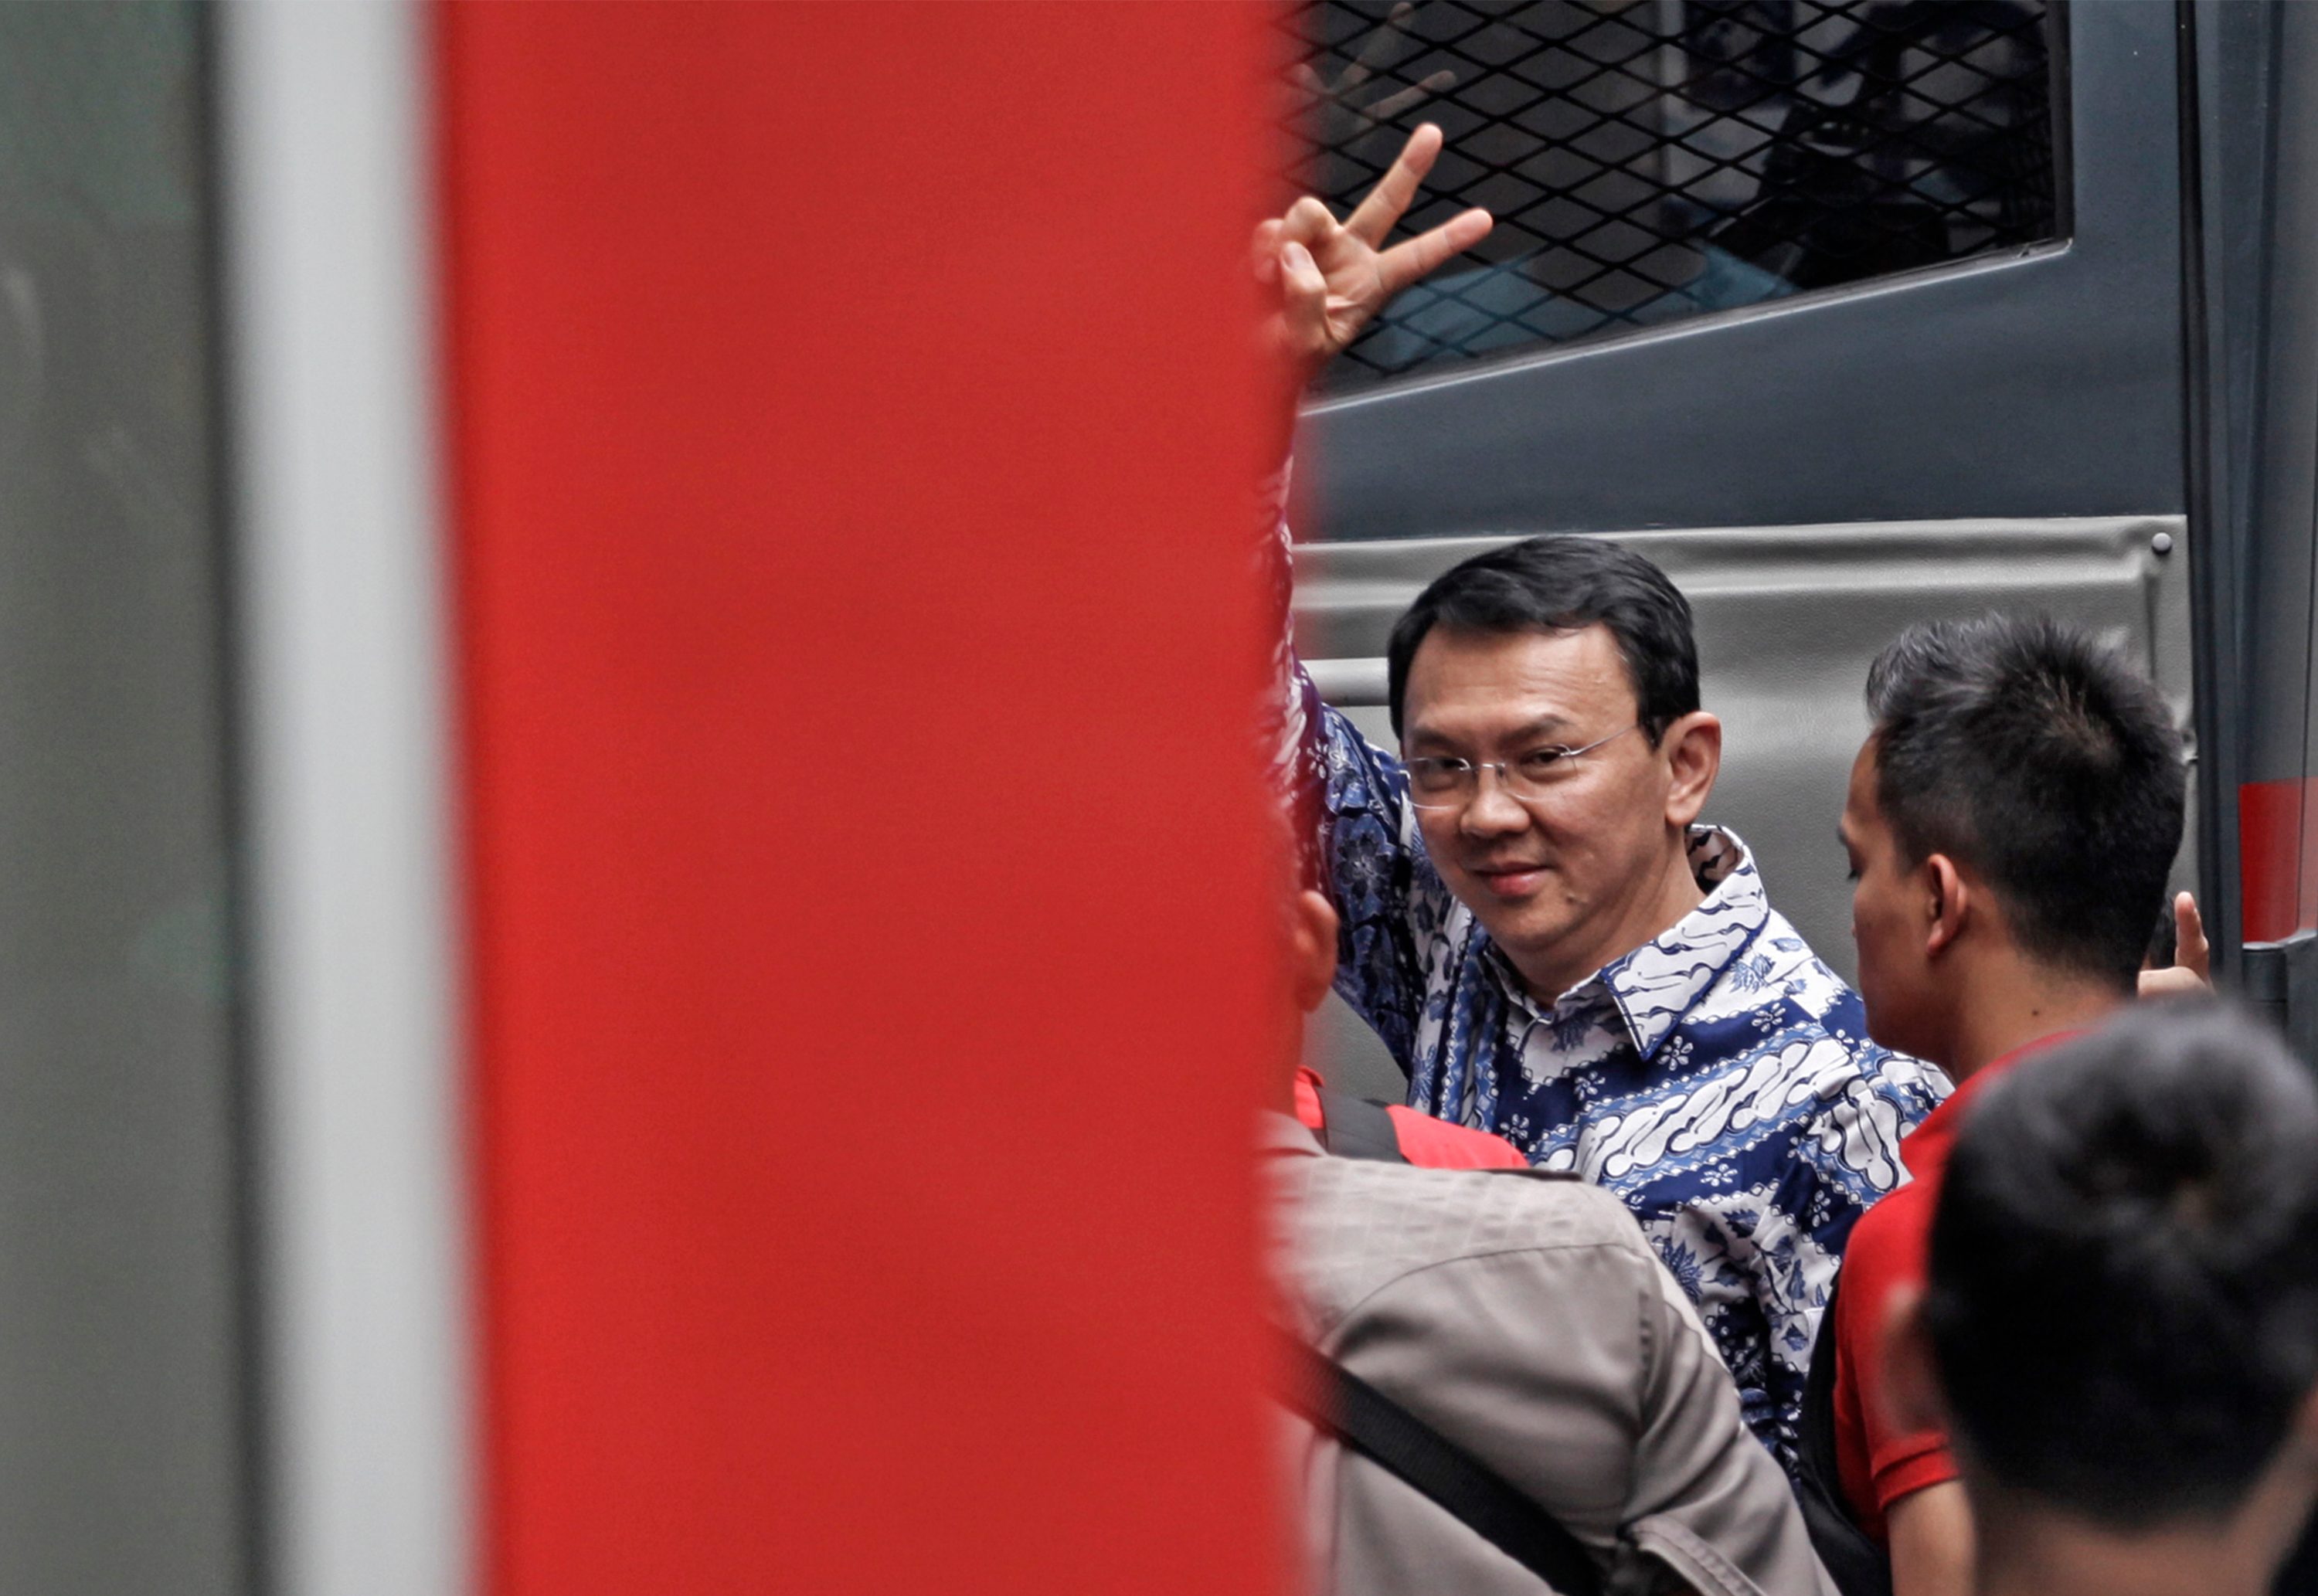 LAMBAIKAN TANGAN. Terpidana kasus penistaan agama Basuki Tjahaja Purnama atau Ahok melambaikan tangan saat tiba di rumah tahanan LP Cipinang, Jakarta, Selasa, 9 Mei. Foto oleh Ubaidillah/ANTARA 